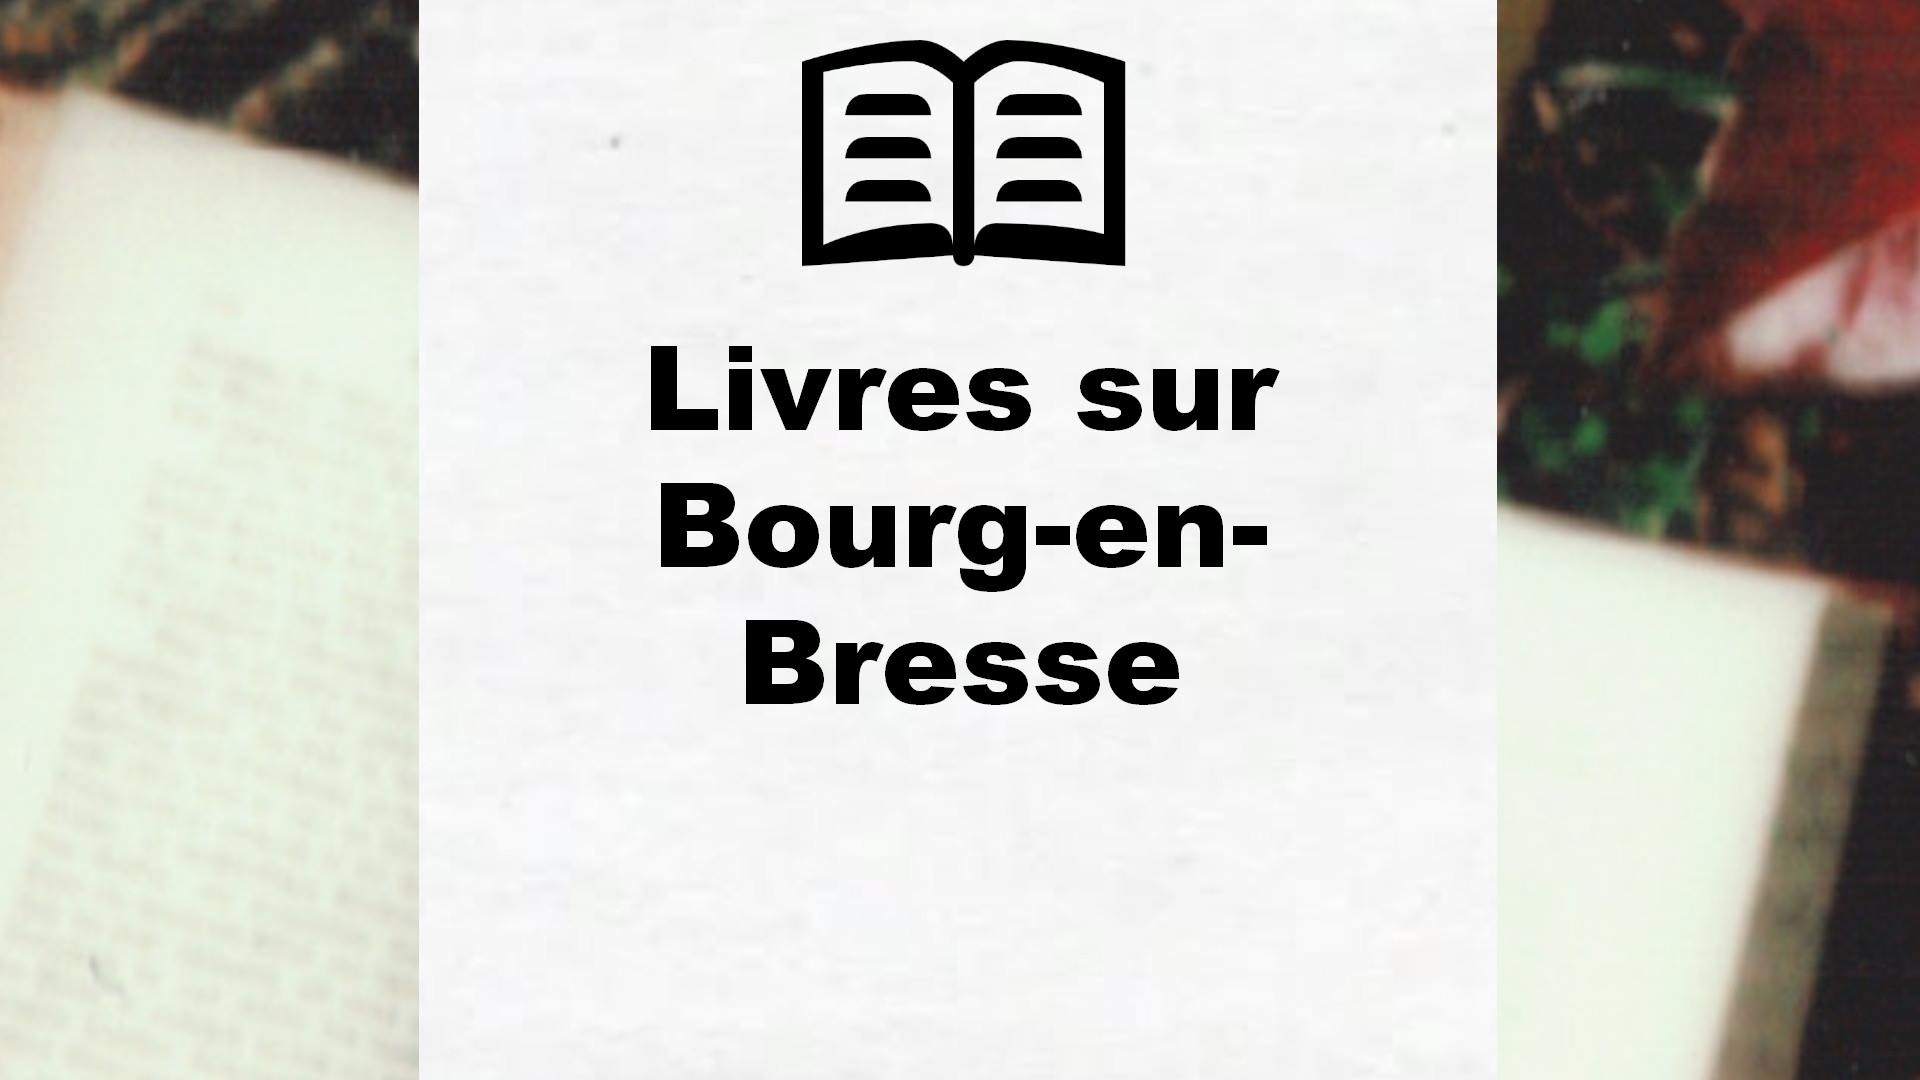 Livres sur Bourg-en-Bresse